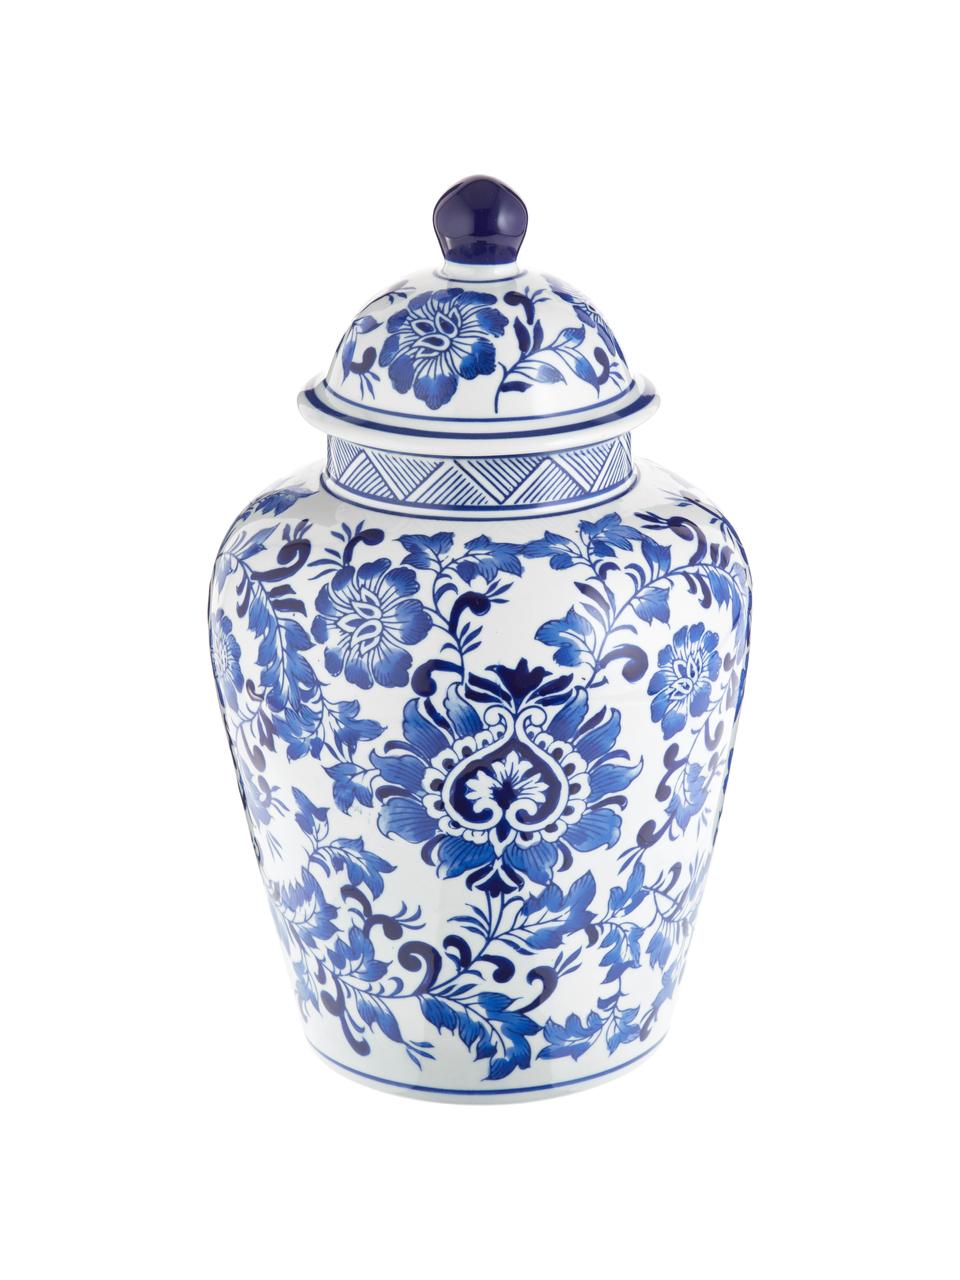 Velká porcelánová váza s víčkem Annabelle, Porcelán, Bílá, modrá, Ø 20 cm